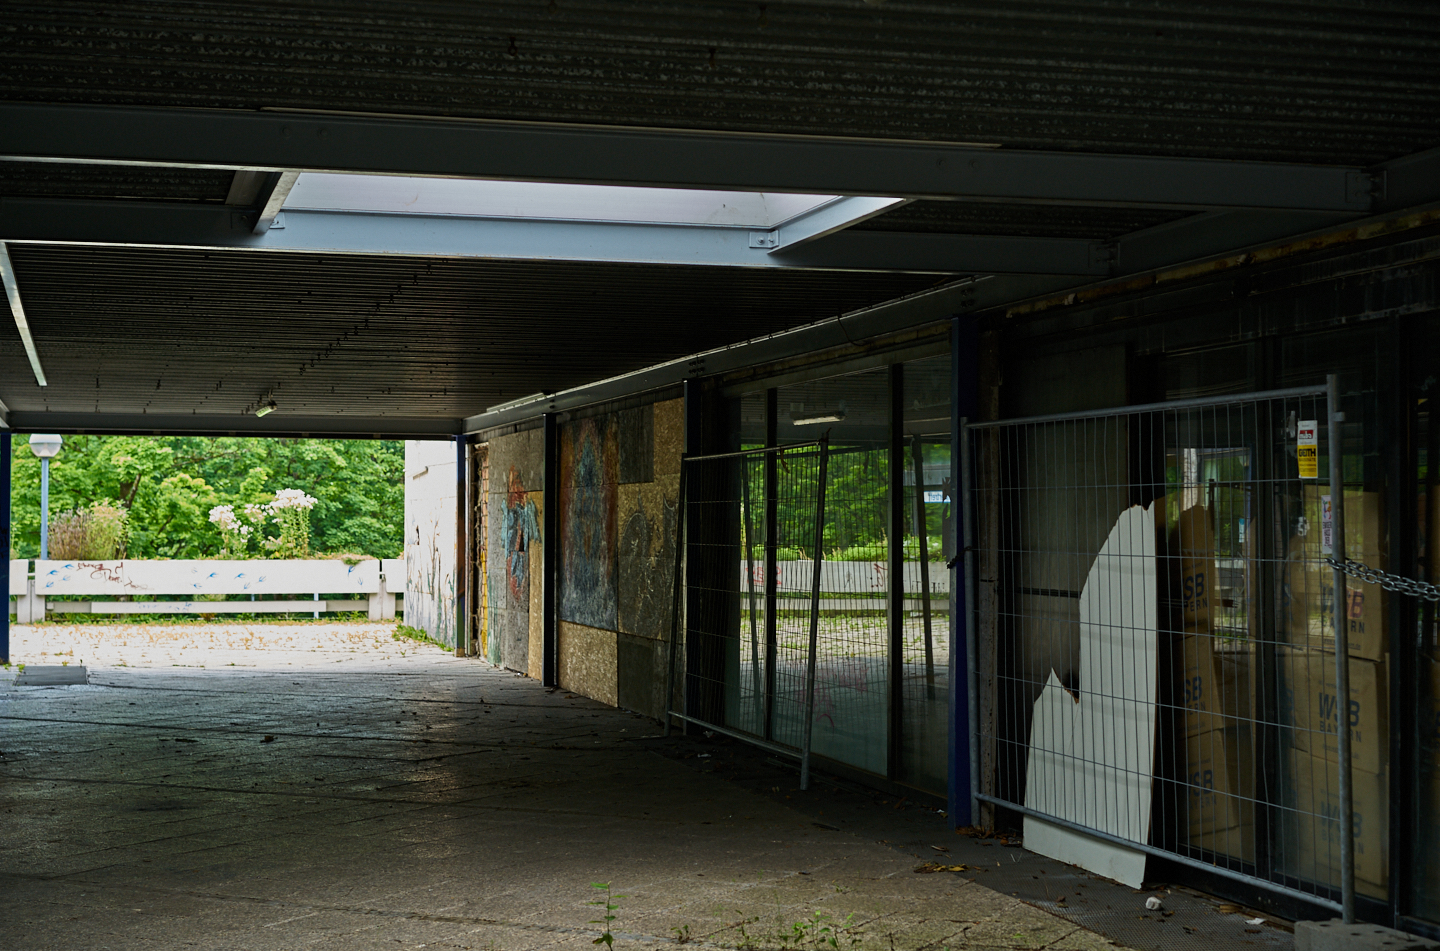 22.09.2019 - Abrissbaustelle Quiddezentrum in Neuperlach